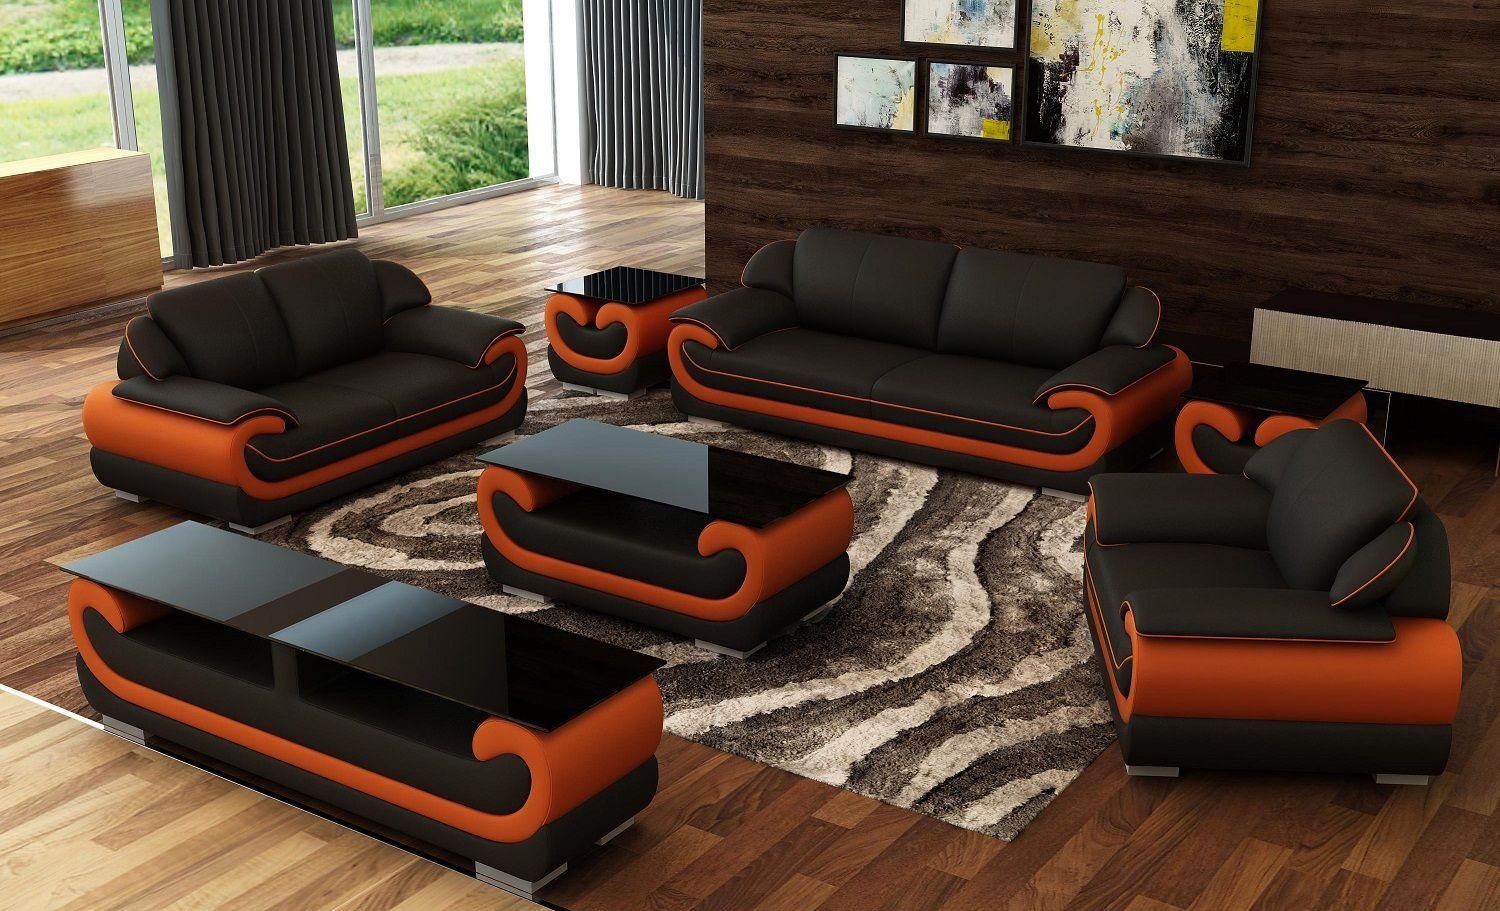 JVmoebel Wohnzimmer-Set Sofagarnitur 3+2+1 Sitzer 2x Beistelltisch Sideboard Hocker 7tlg.Set Schwarz/Rot